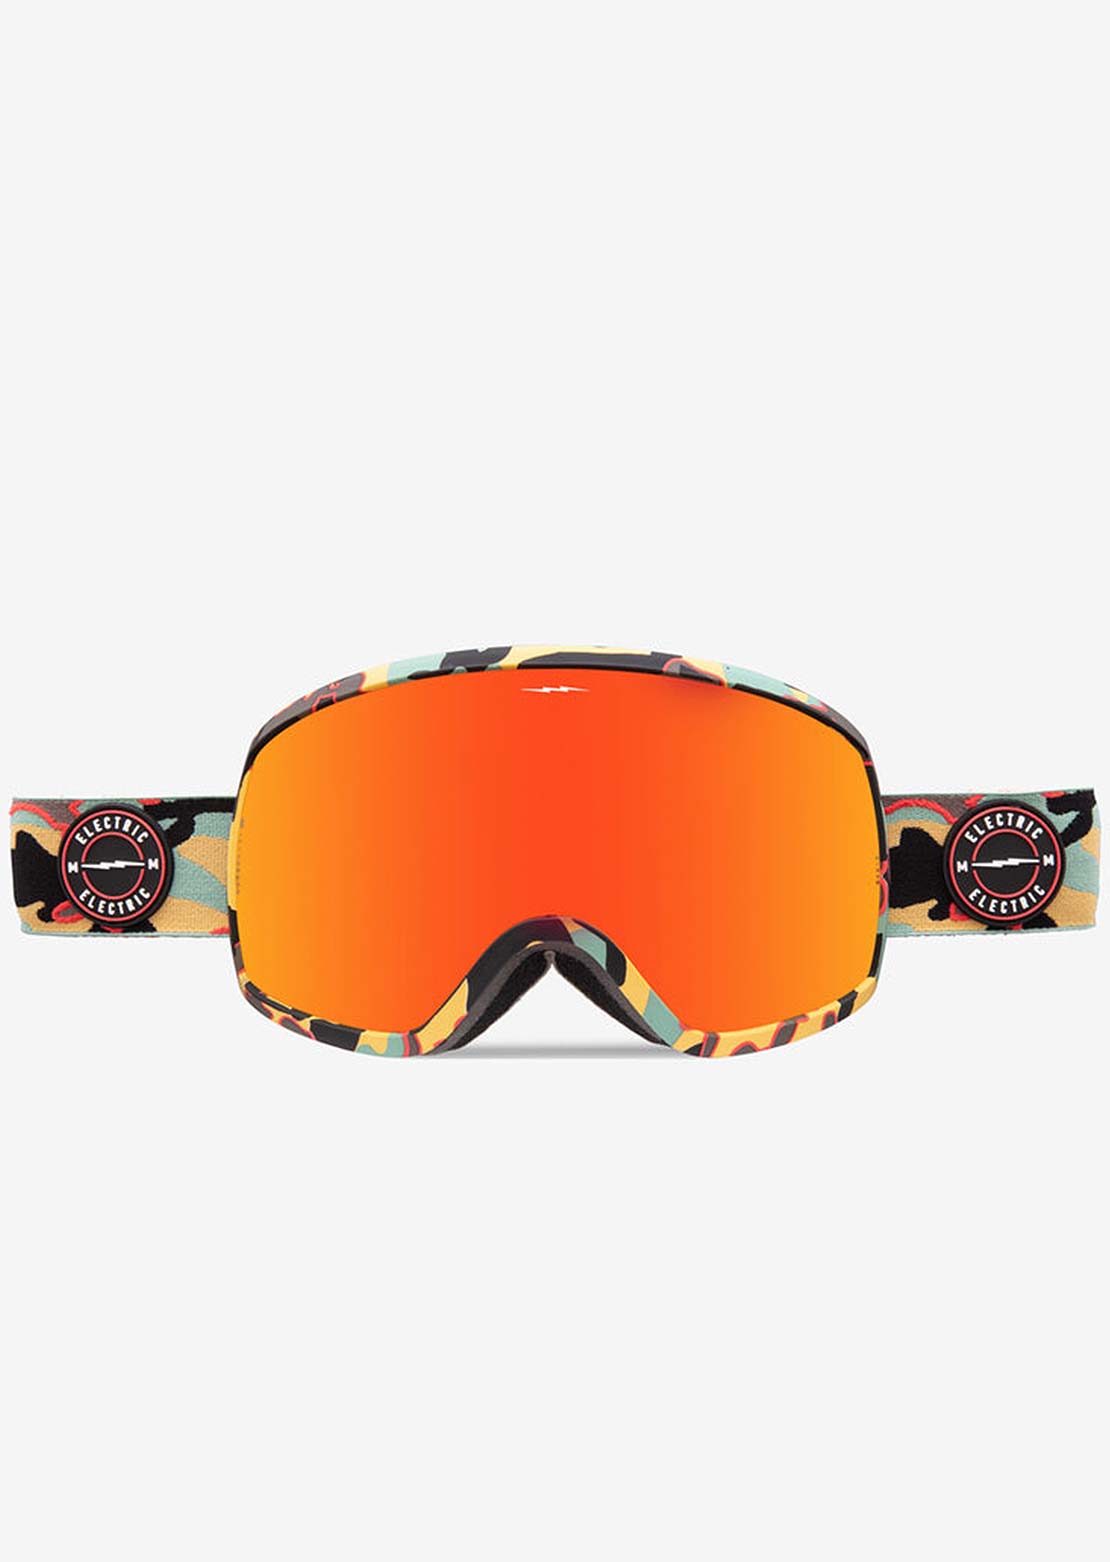 Electric EG2-T Snow Goggles Future Camo/Auburn Red